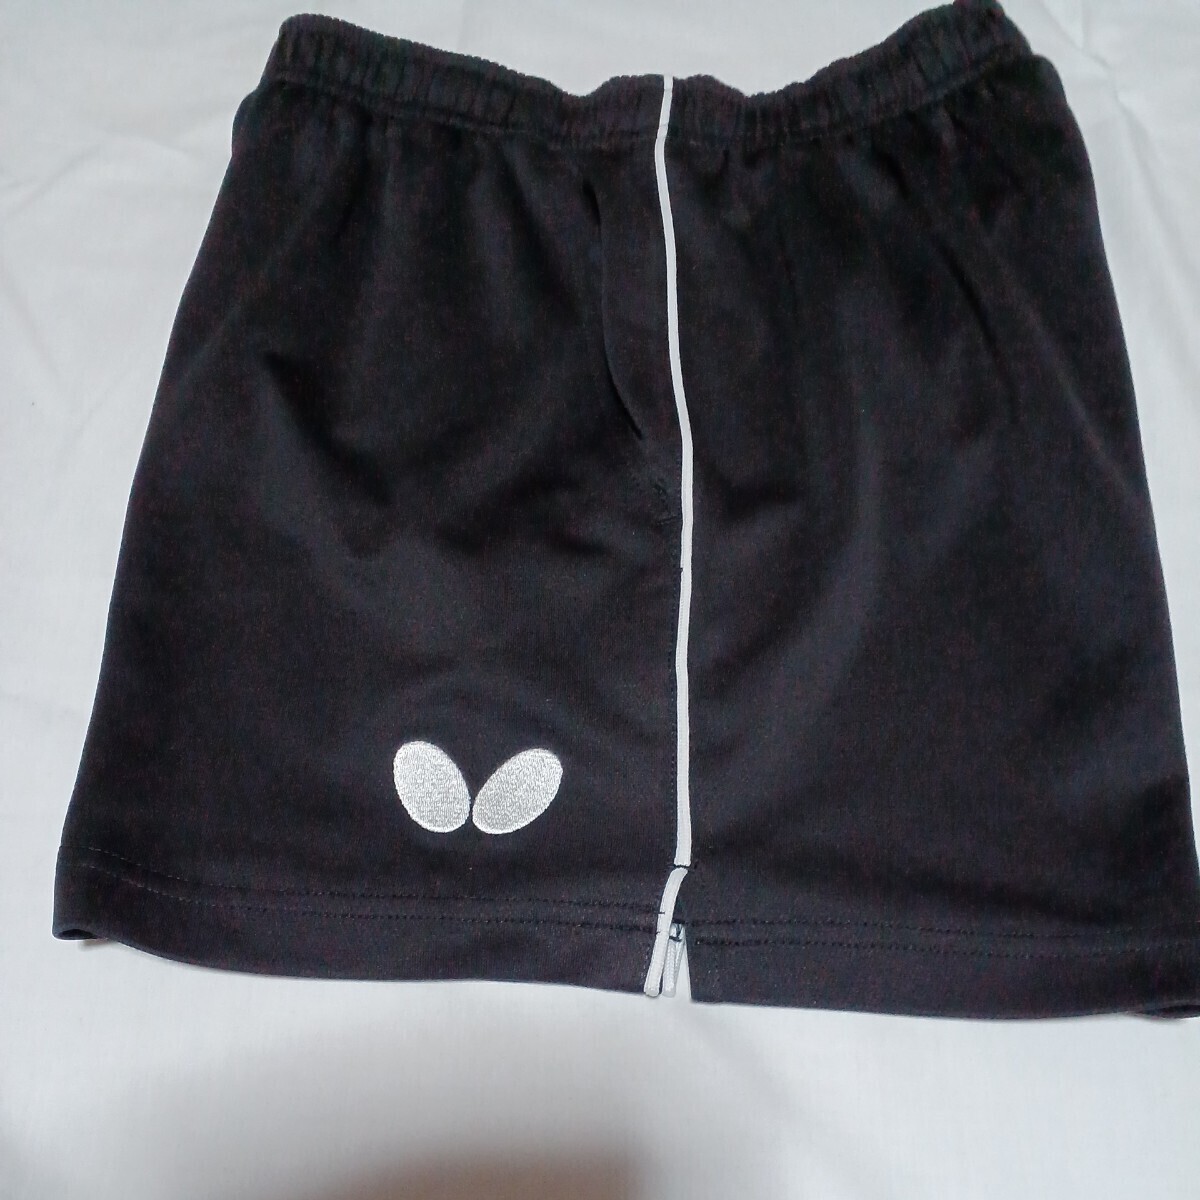  настольный теннис брюки бабочка чёрный для мужчин и женщин S размер 